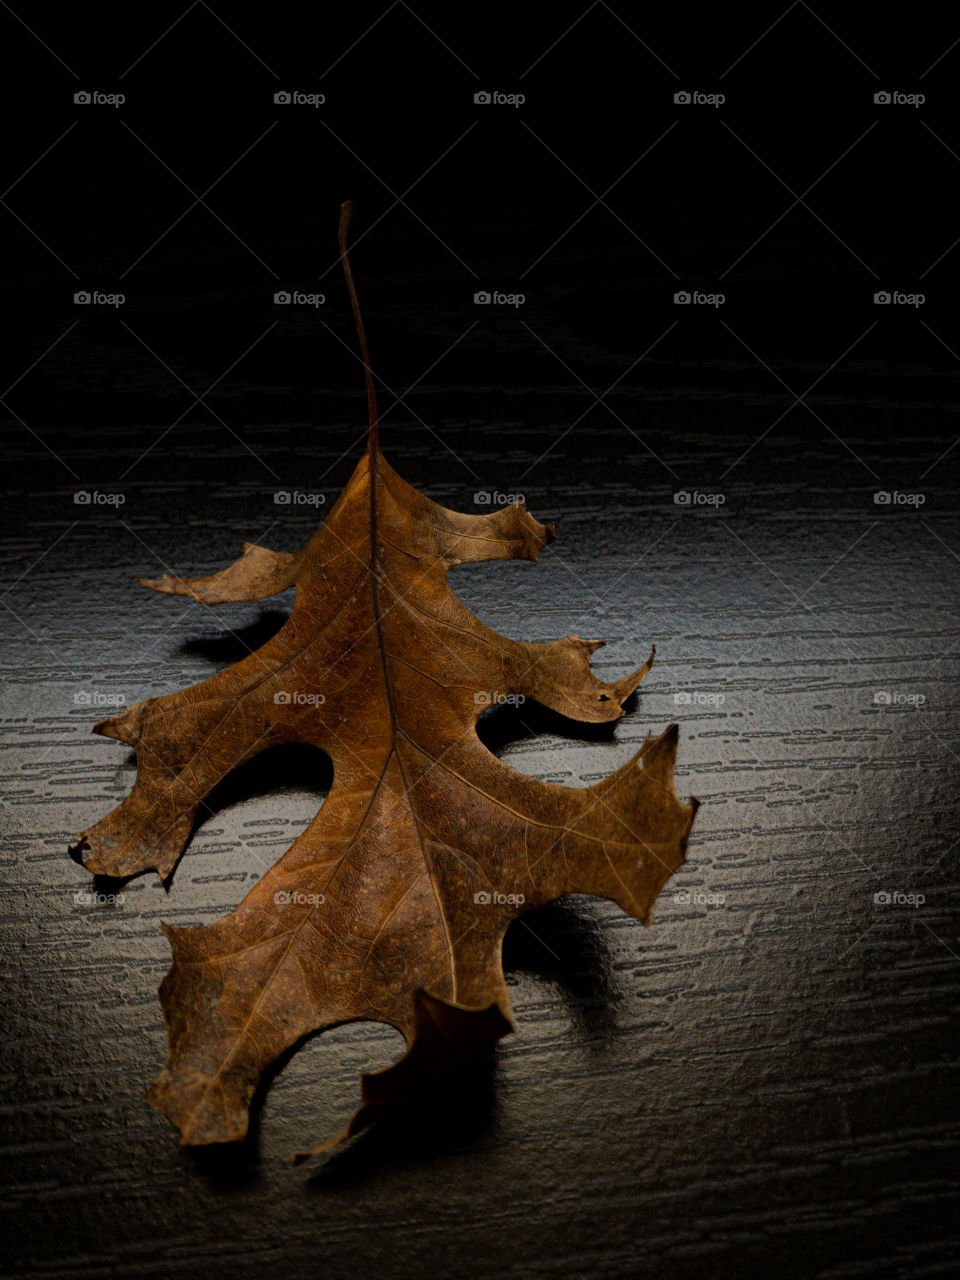 Dead oak leaf on black woodgrain backdrop 